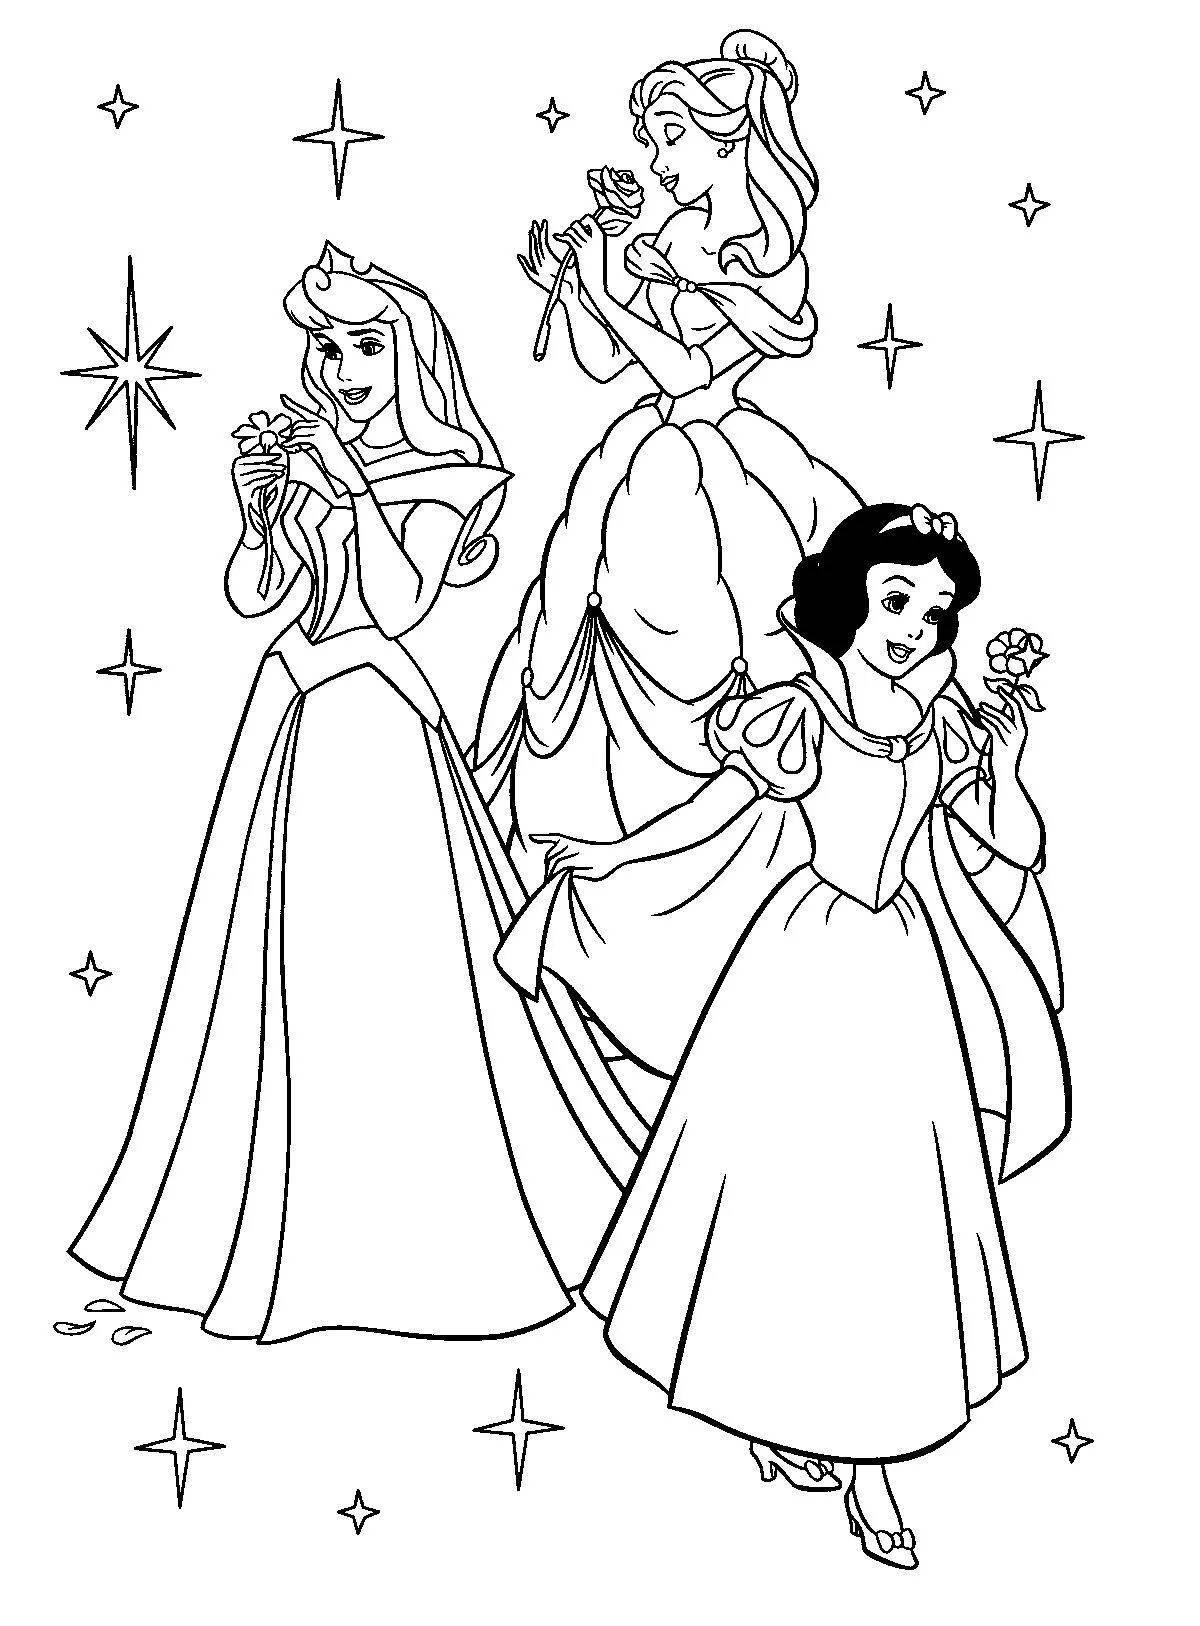 Disney princess coloring book for kids